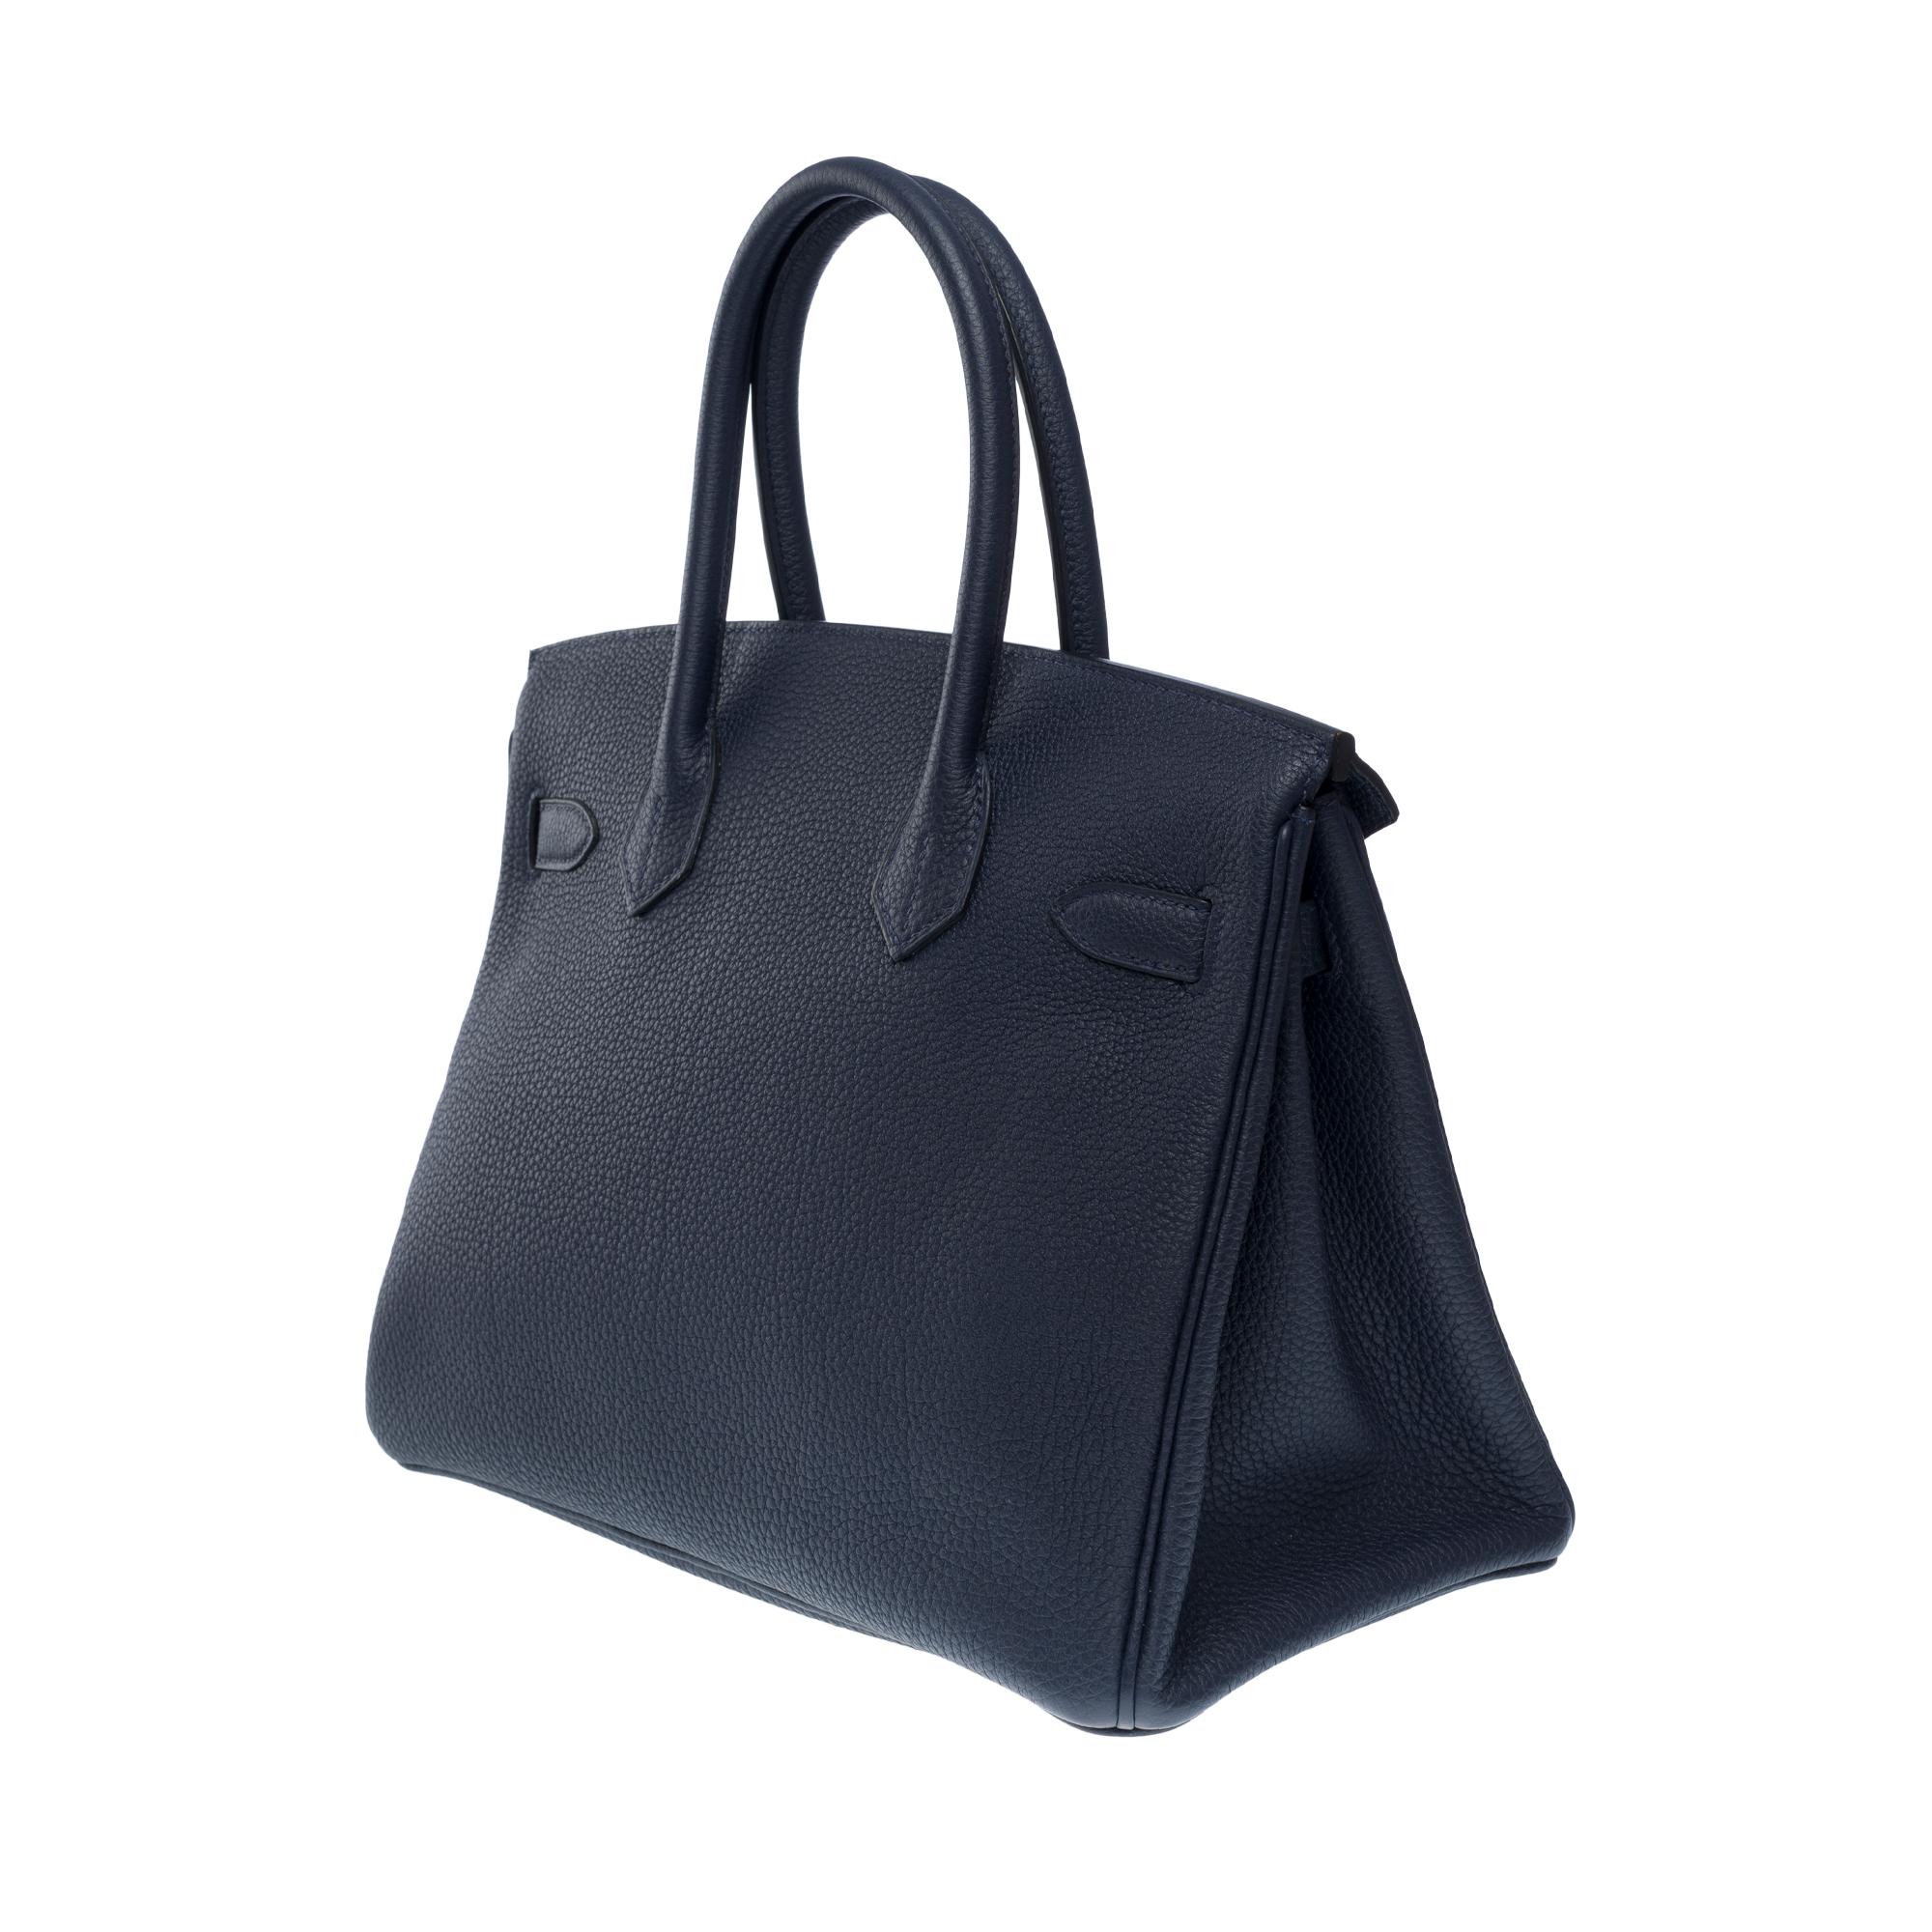 Hermes Birkin 30 handbag in Bleu nuit Togo leather, SHW For Sale 1